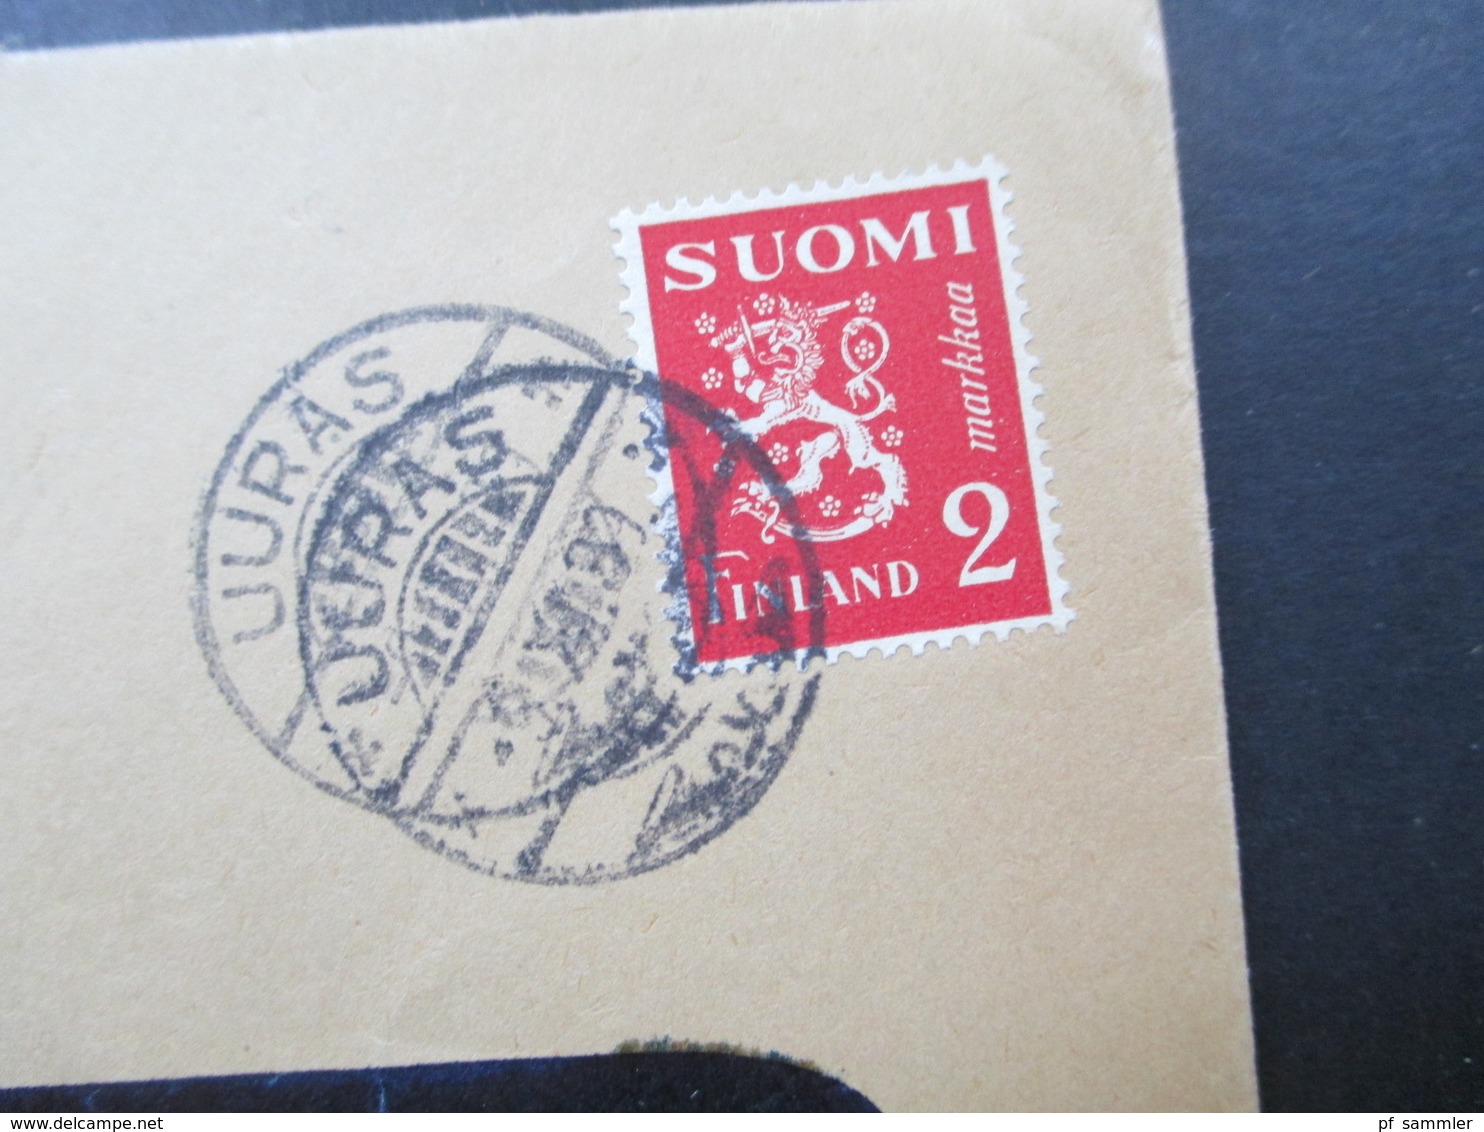 Finnland 1939 A.Ahlström Osakeyhtiö Uuras Trangsund Violetter Stempel Tarkastettu 20.1o.39 Ann. Asetuksen No 348 Nojalla - Cartas & Documentos